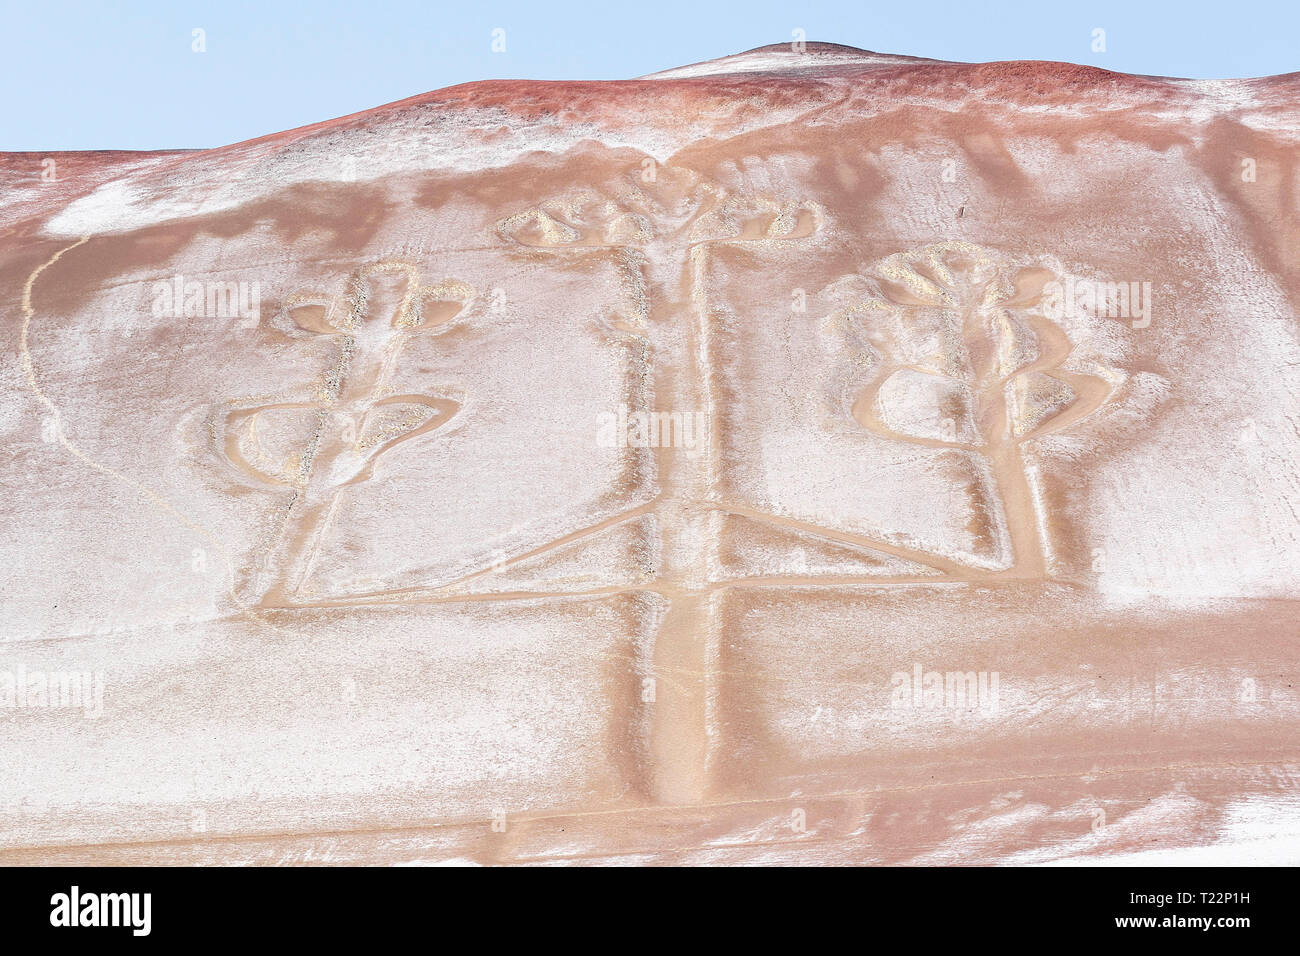 Detalle del famoso geoglifo llamado el candelabro perteneciente a la cultura Nasca y actualmente se encuentra en la península de Paracas en Pisco - Perú Foto de stock